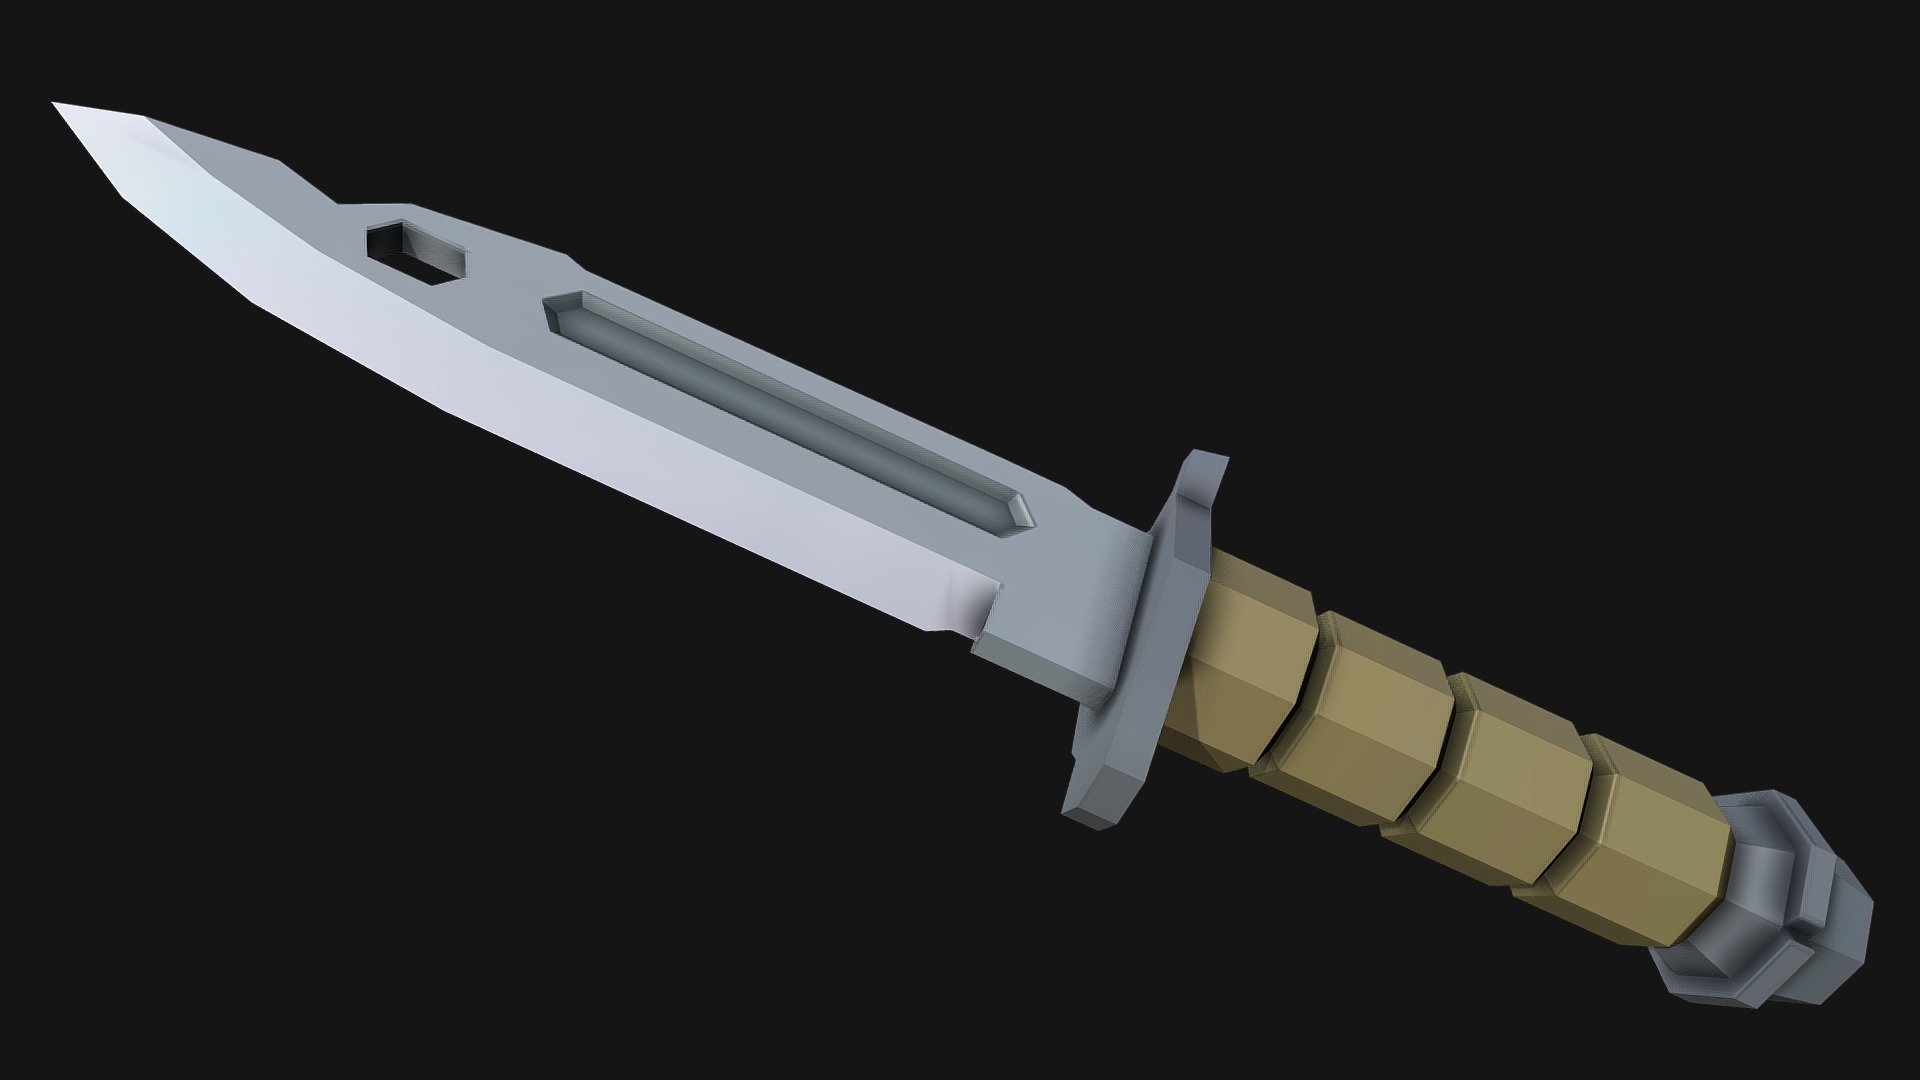 Military Knife (Low Poly) - 3D model by Likonisa (@eDU6tjT5IDwTntq) 3d model